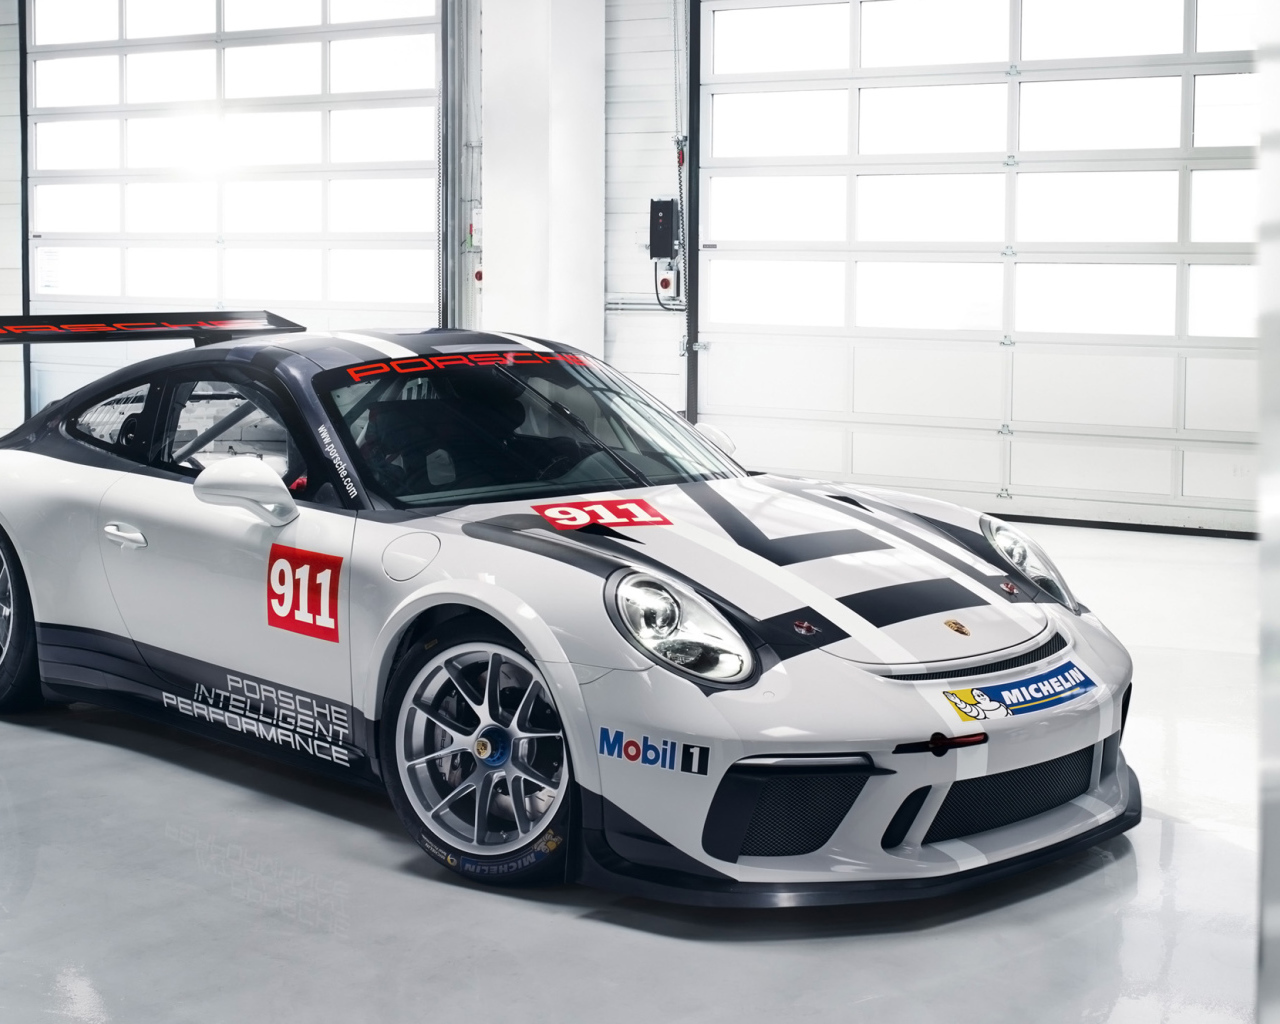 Sports car Porsche 911 GT3 in the garage